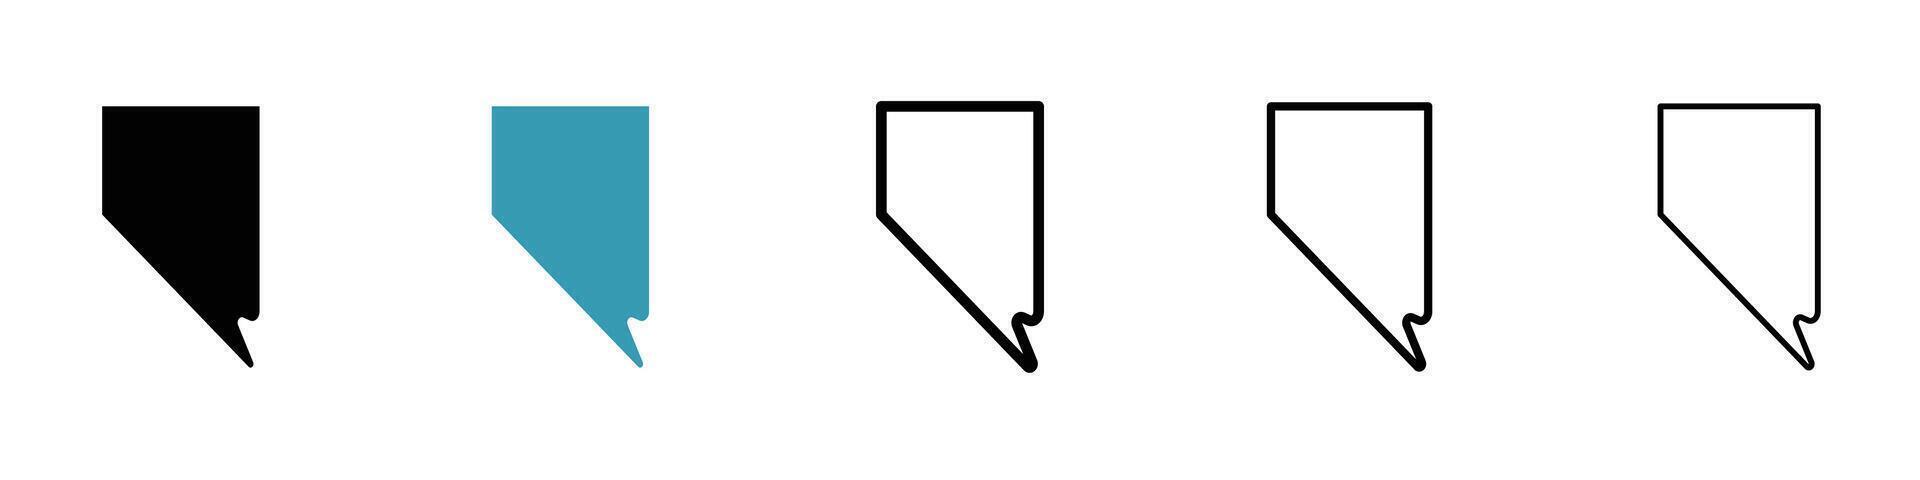 Nevada map icon vector